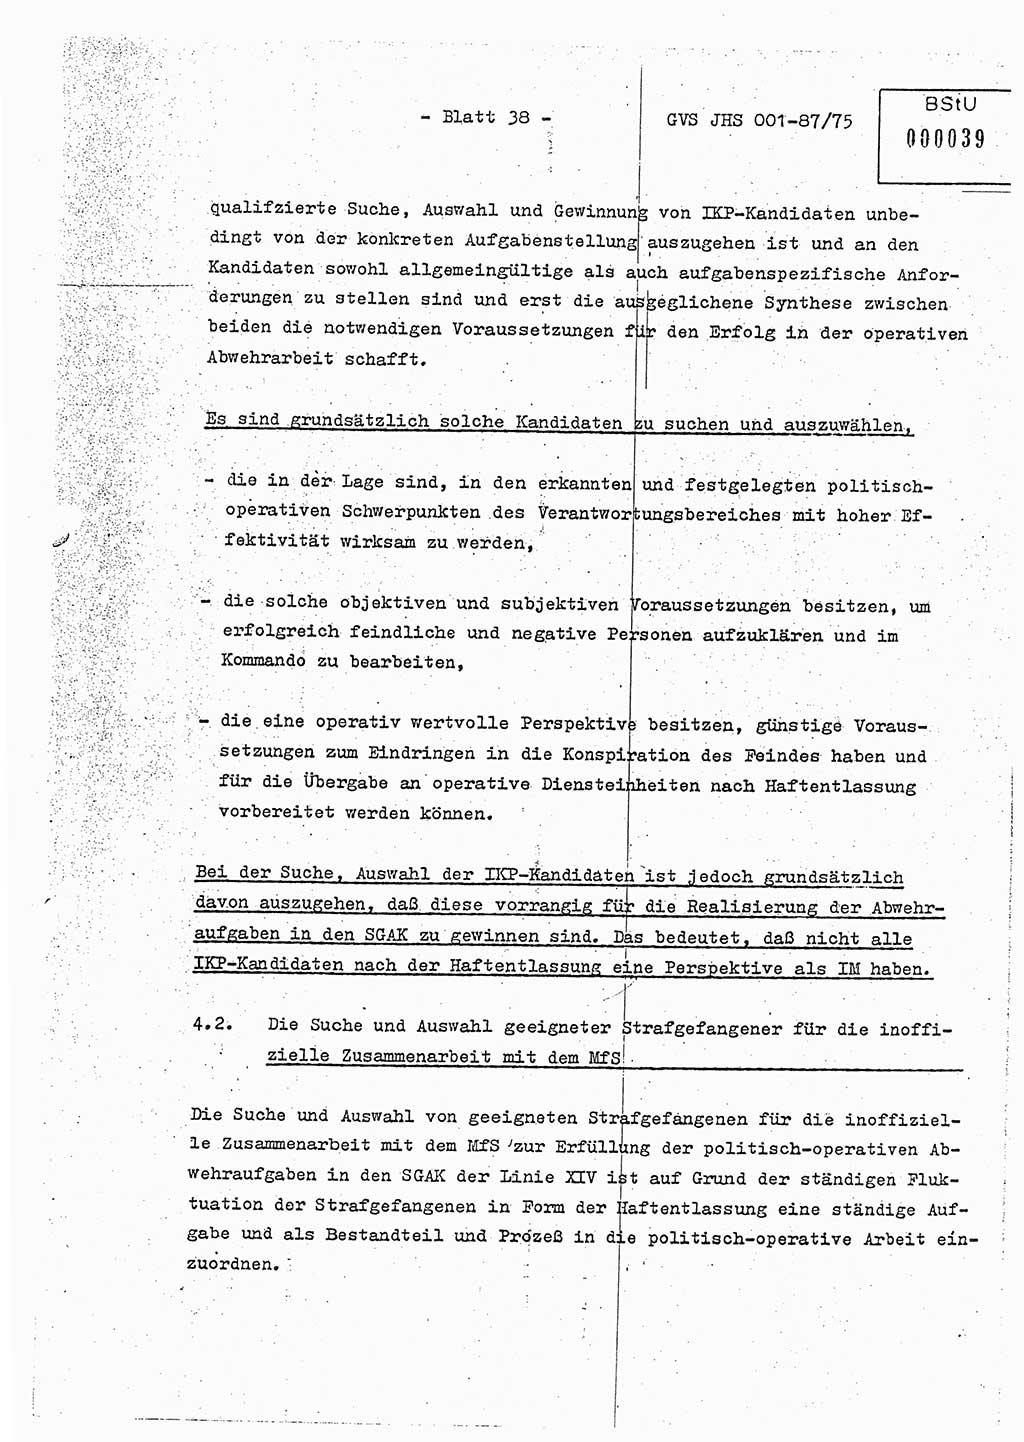 Diplomarbeit Hauptmann Volkmar Heinz (Abt. ⅩⅣ), Oberleutnant Lothar Rüdiger (BV Lpz. Abt. Ⅺ), Ministerium für Staatssicherheit (MfS) [Deutsche Demokratische Republik (DDR)], Juristische Hochschule (JHS), Geheime Verschlußsache (GVS) o001-87/75, Potsdam 1975, Seite 38 (Dipl.-Arb. MfS DDR JHS GVS o001-87/75 1975, S. 38)